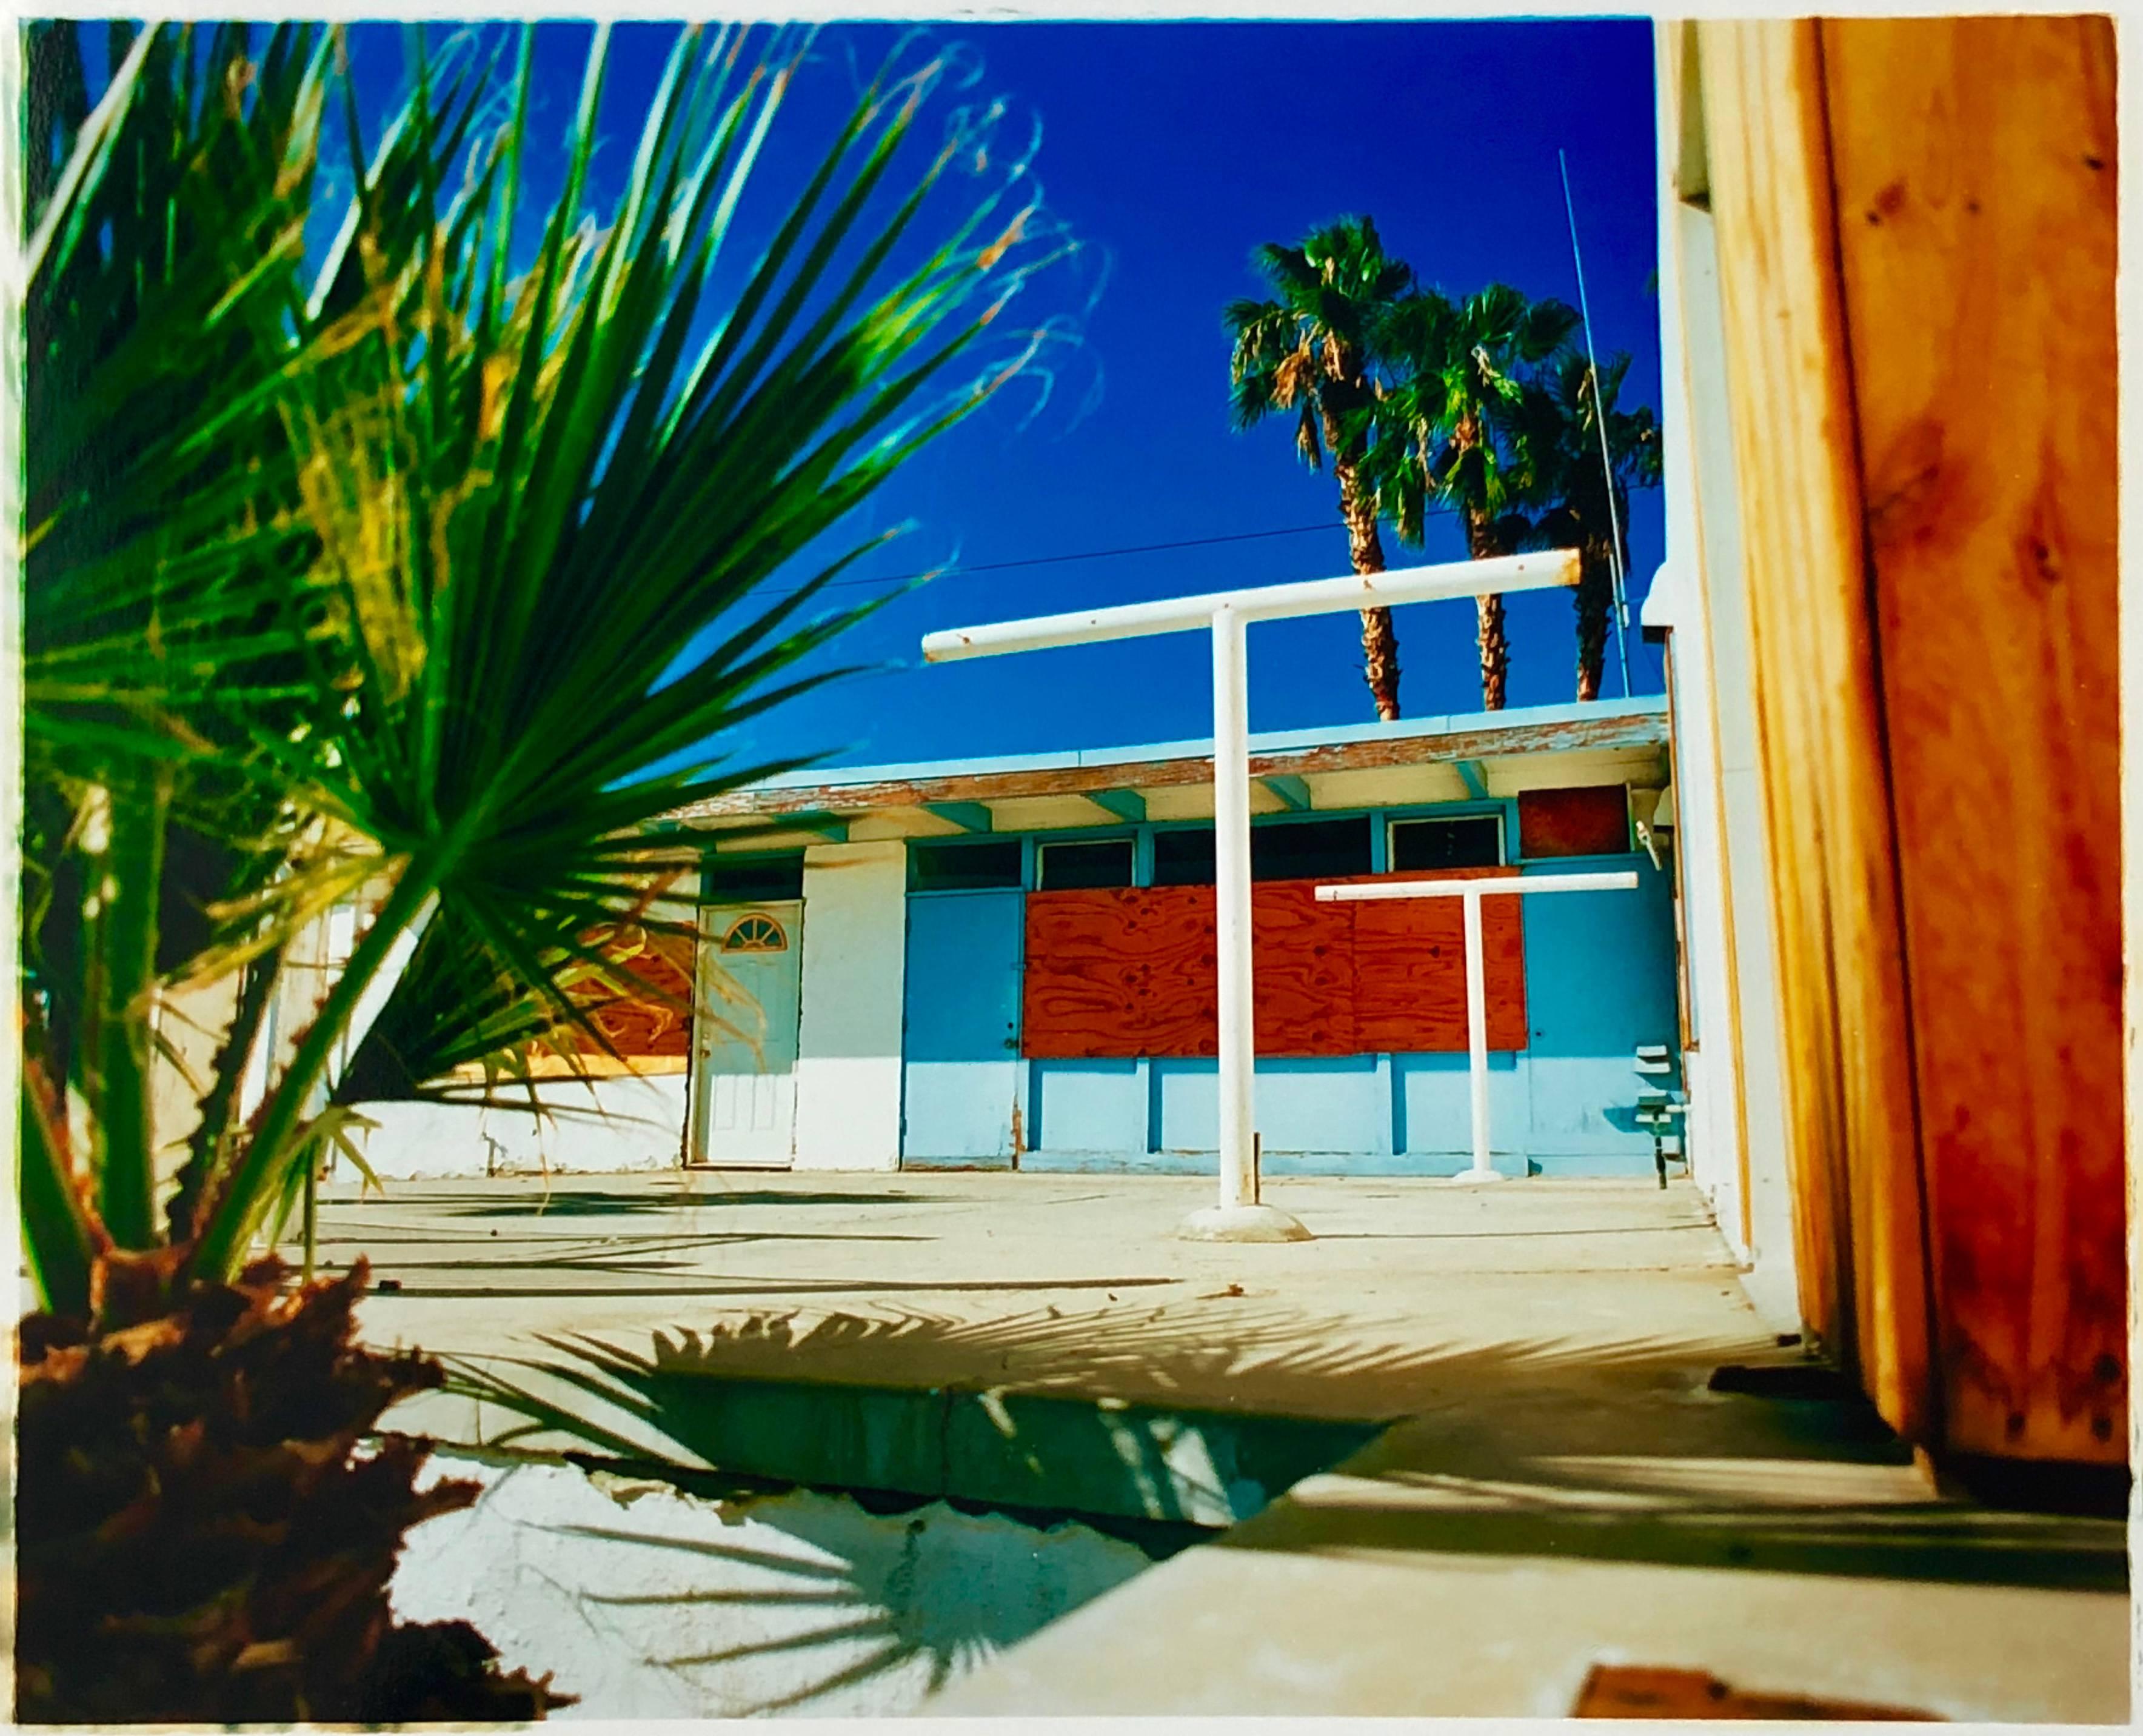 Motel Desert Shores, Salton Sea, California - American Color Photography